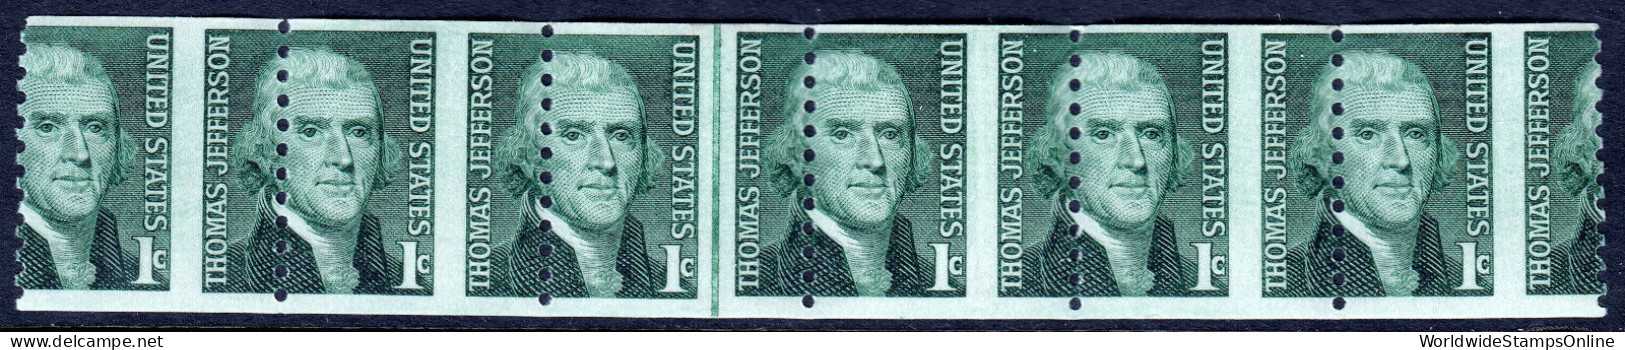 USA — SCOTT 1299 — 1¢ JEFFERSON COIL — LINE STRIP OF 6 - Variedades, Errores & Curiosidades